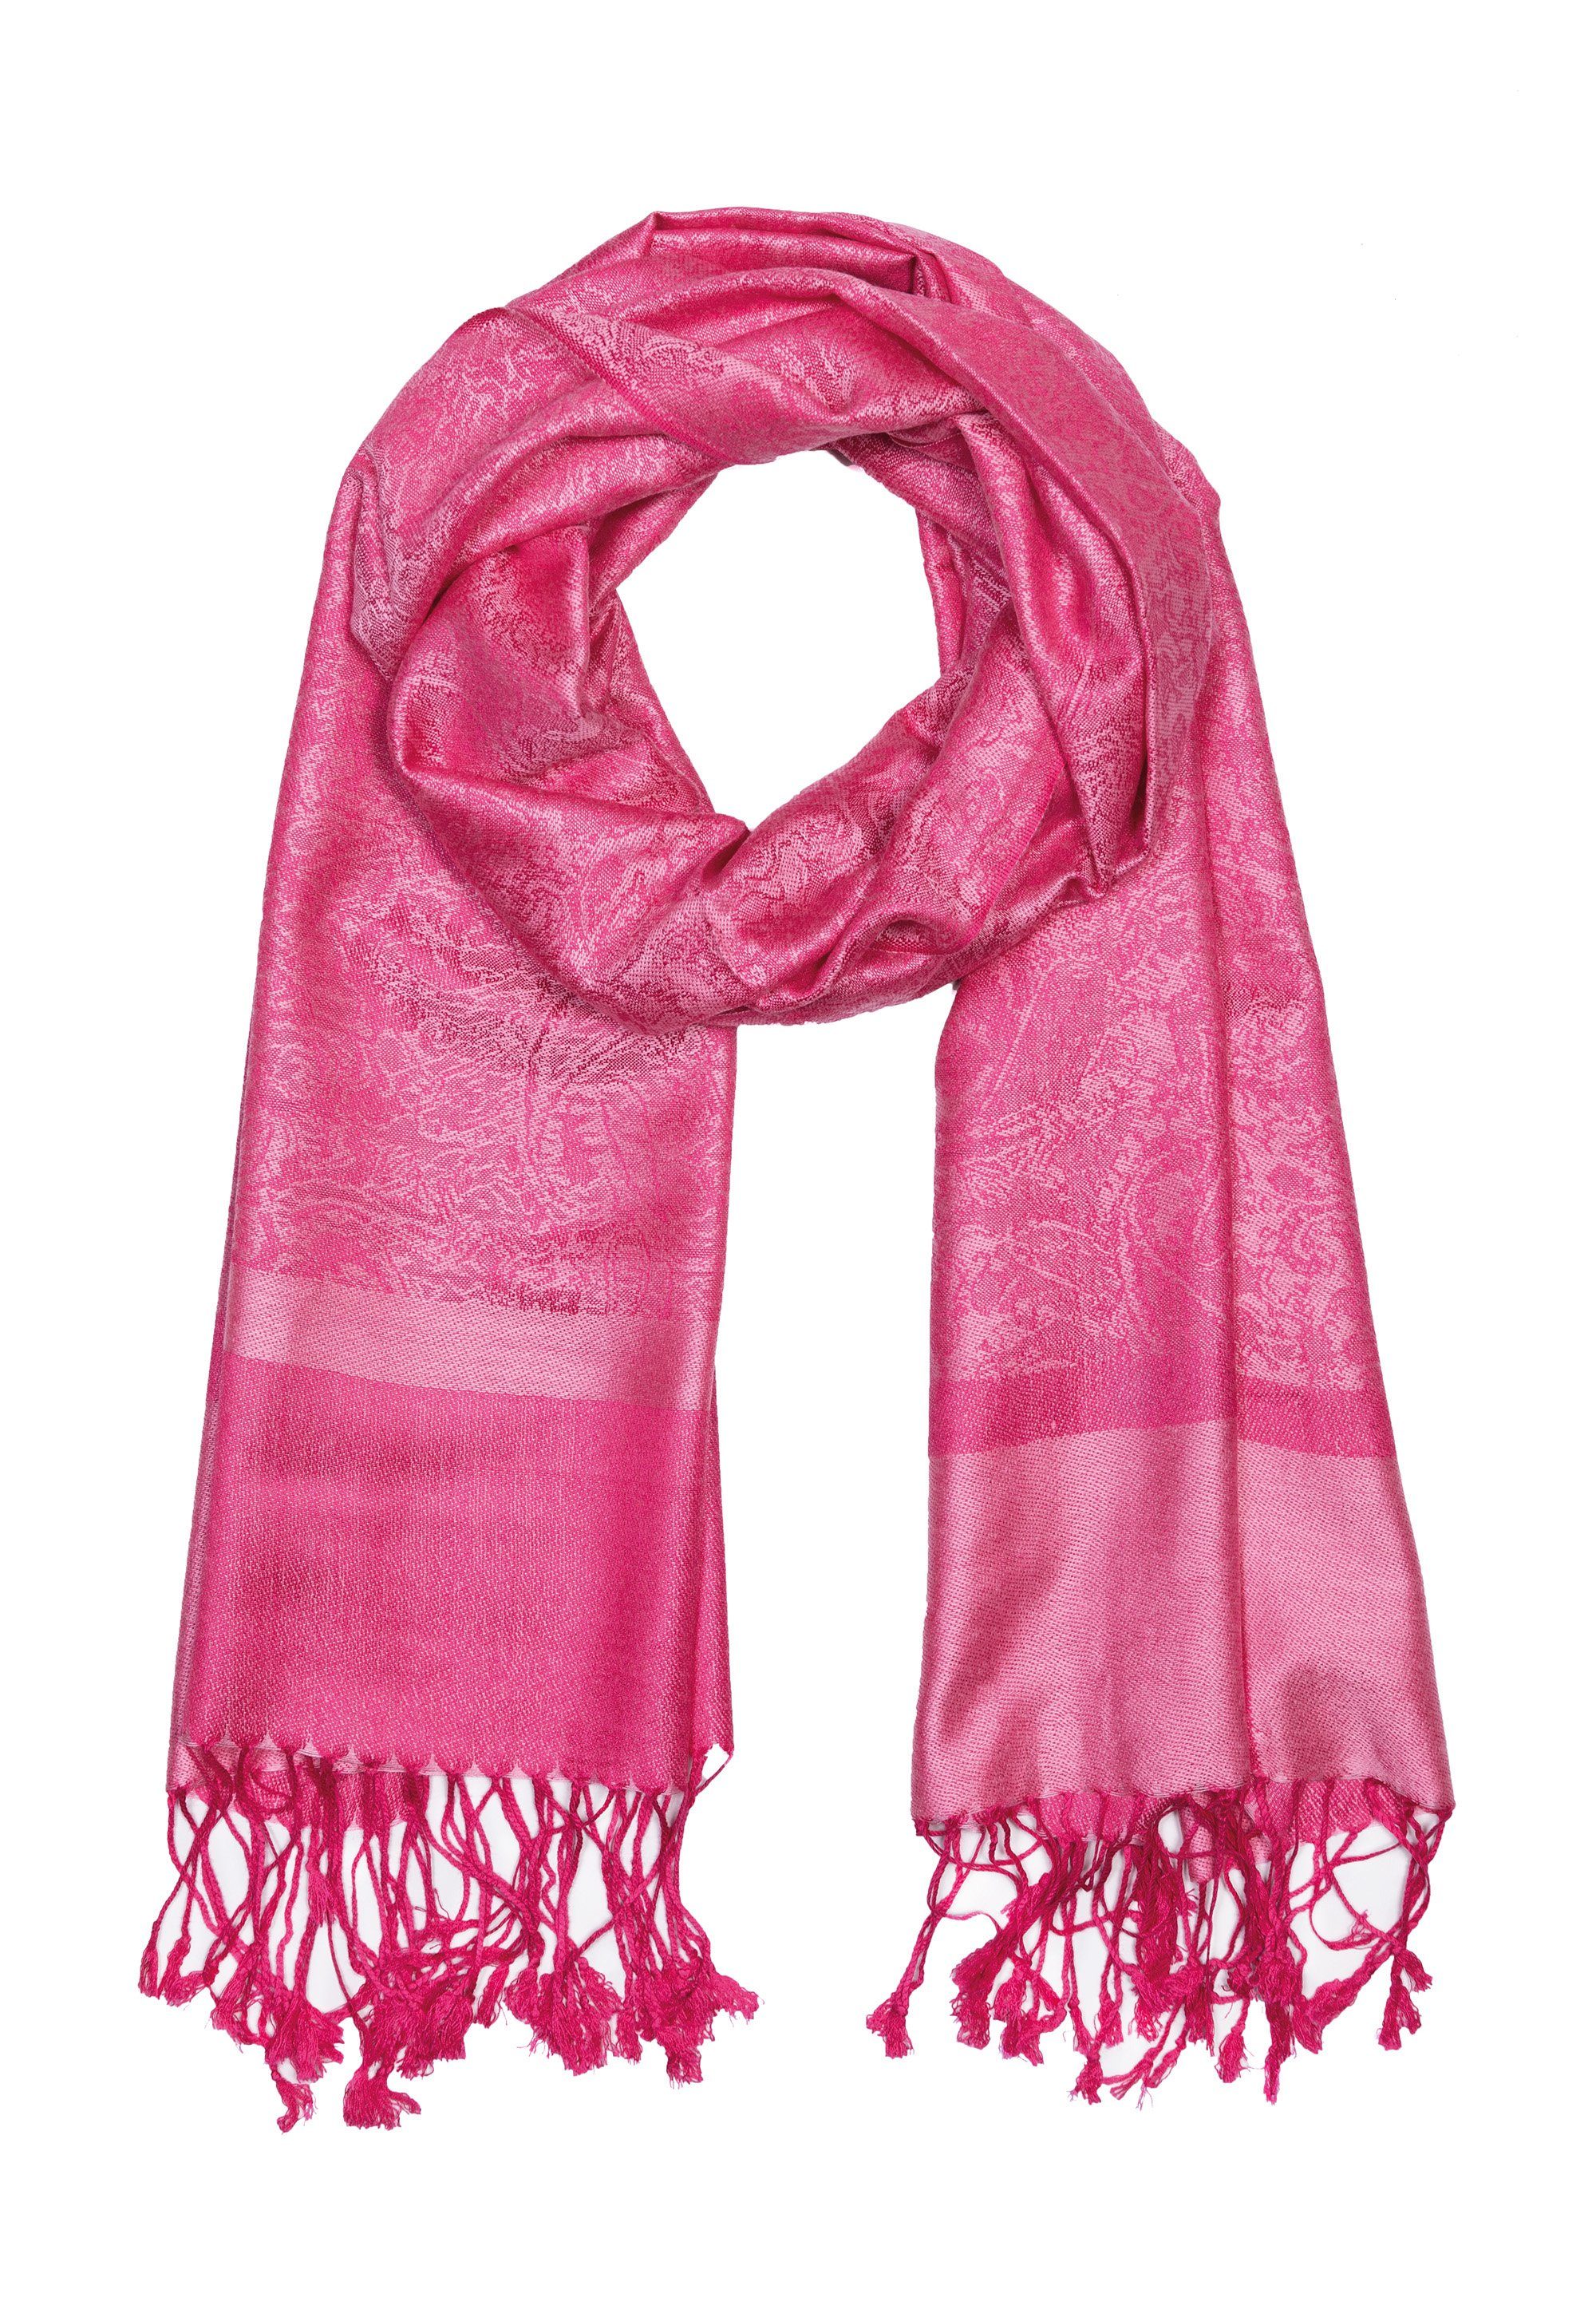 Goodman Design raffinierten Pink Sehr Material Paisleymuster, hochwertiges Modeschal mit Fransenschal